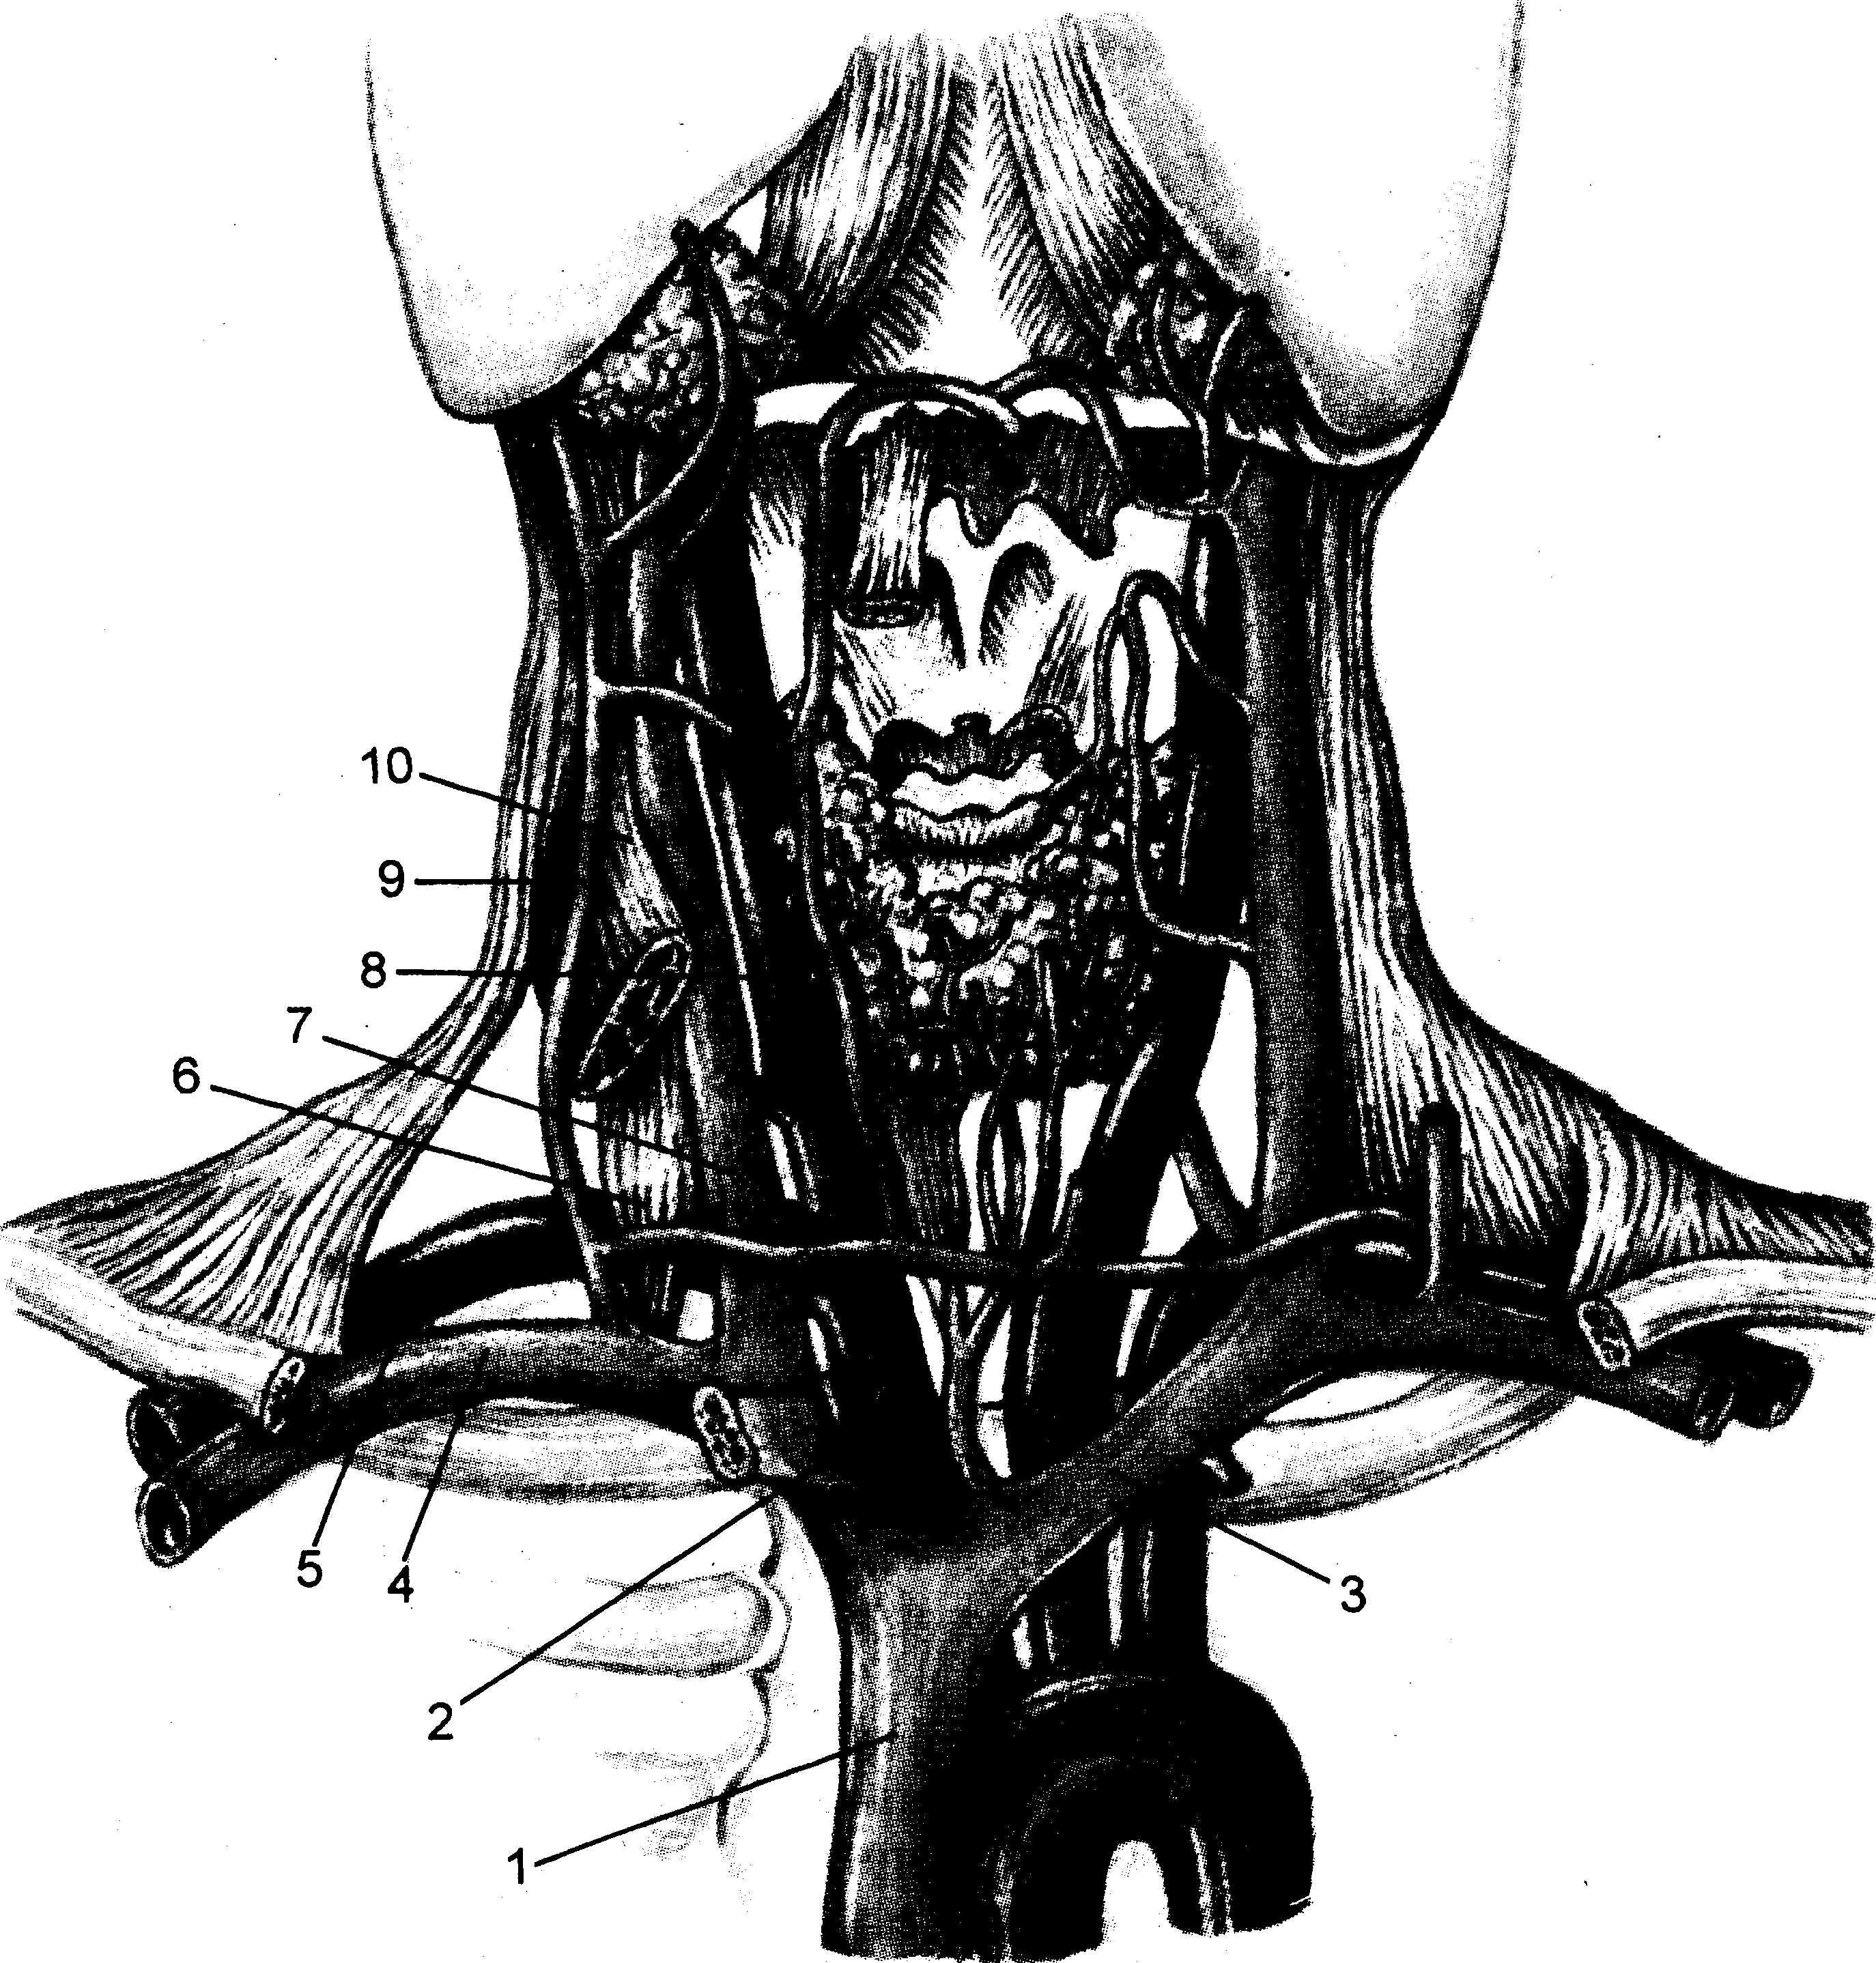 Подключичная вена анатомия